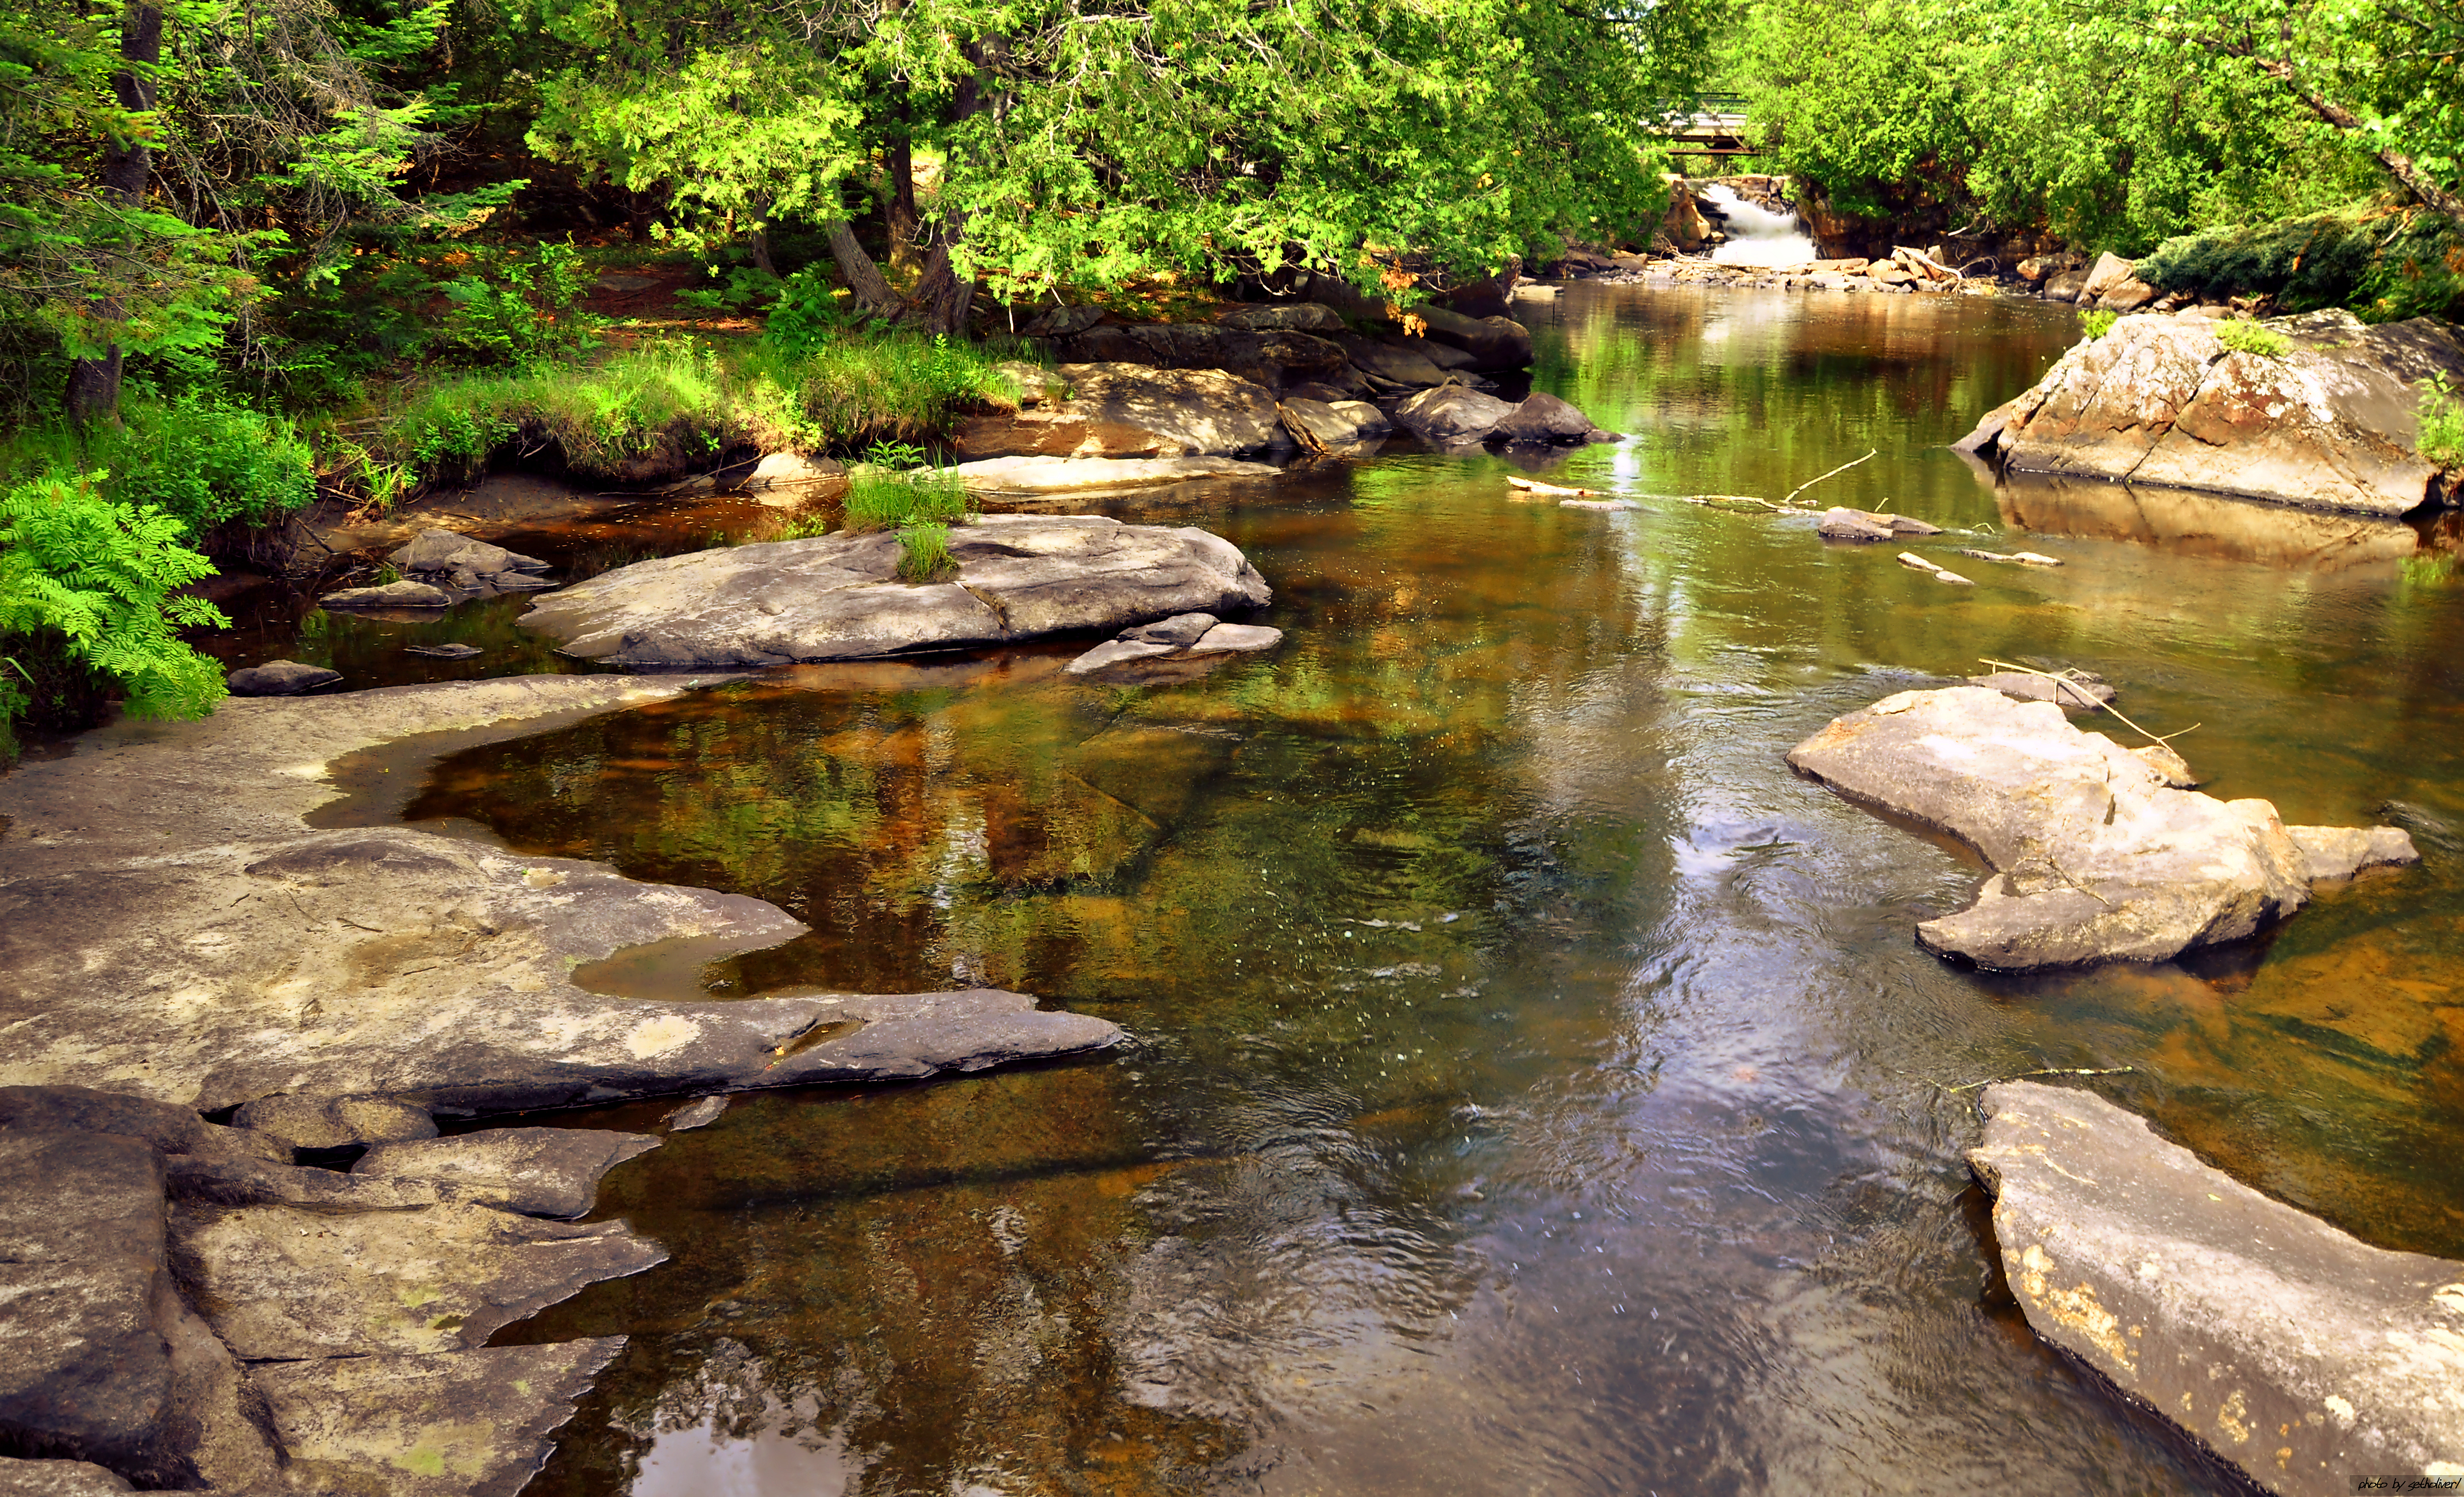 Stone river. Речка Каширка камни. Каменистый берег реки. Горная каменистая река. Ручей с камнями.